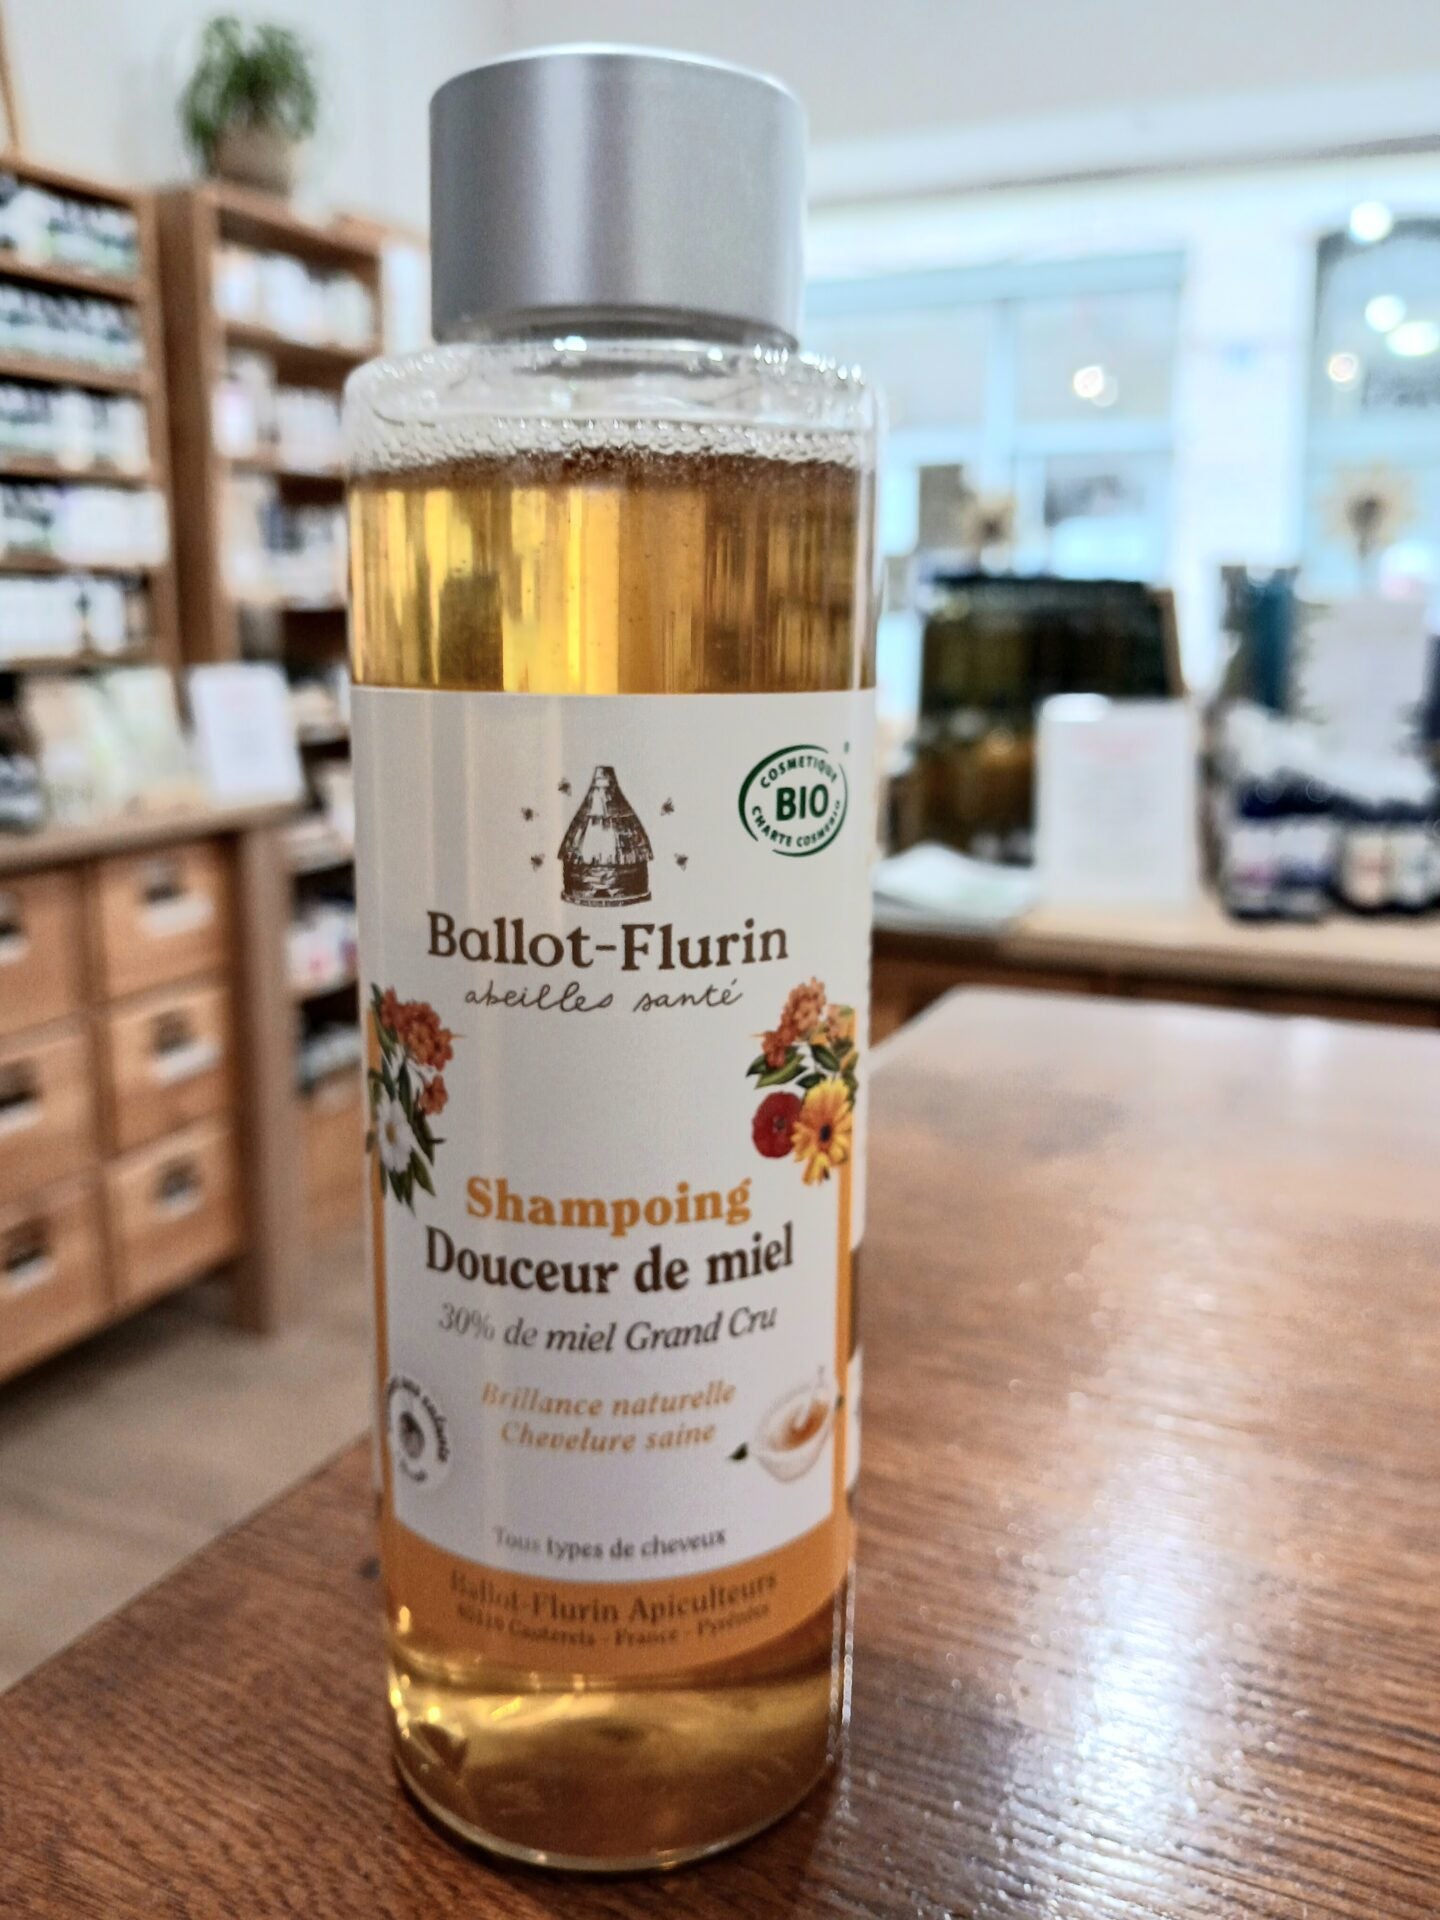 Shampoing Douceur de miel - Brillance naturelle